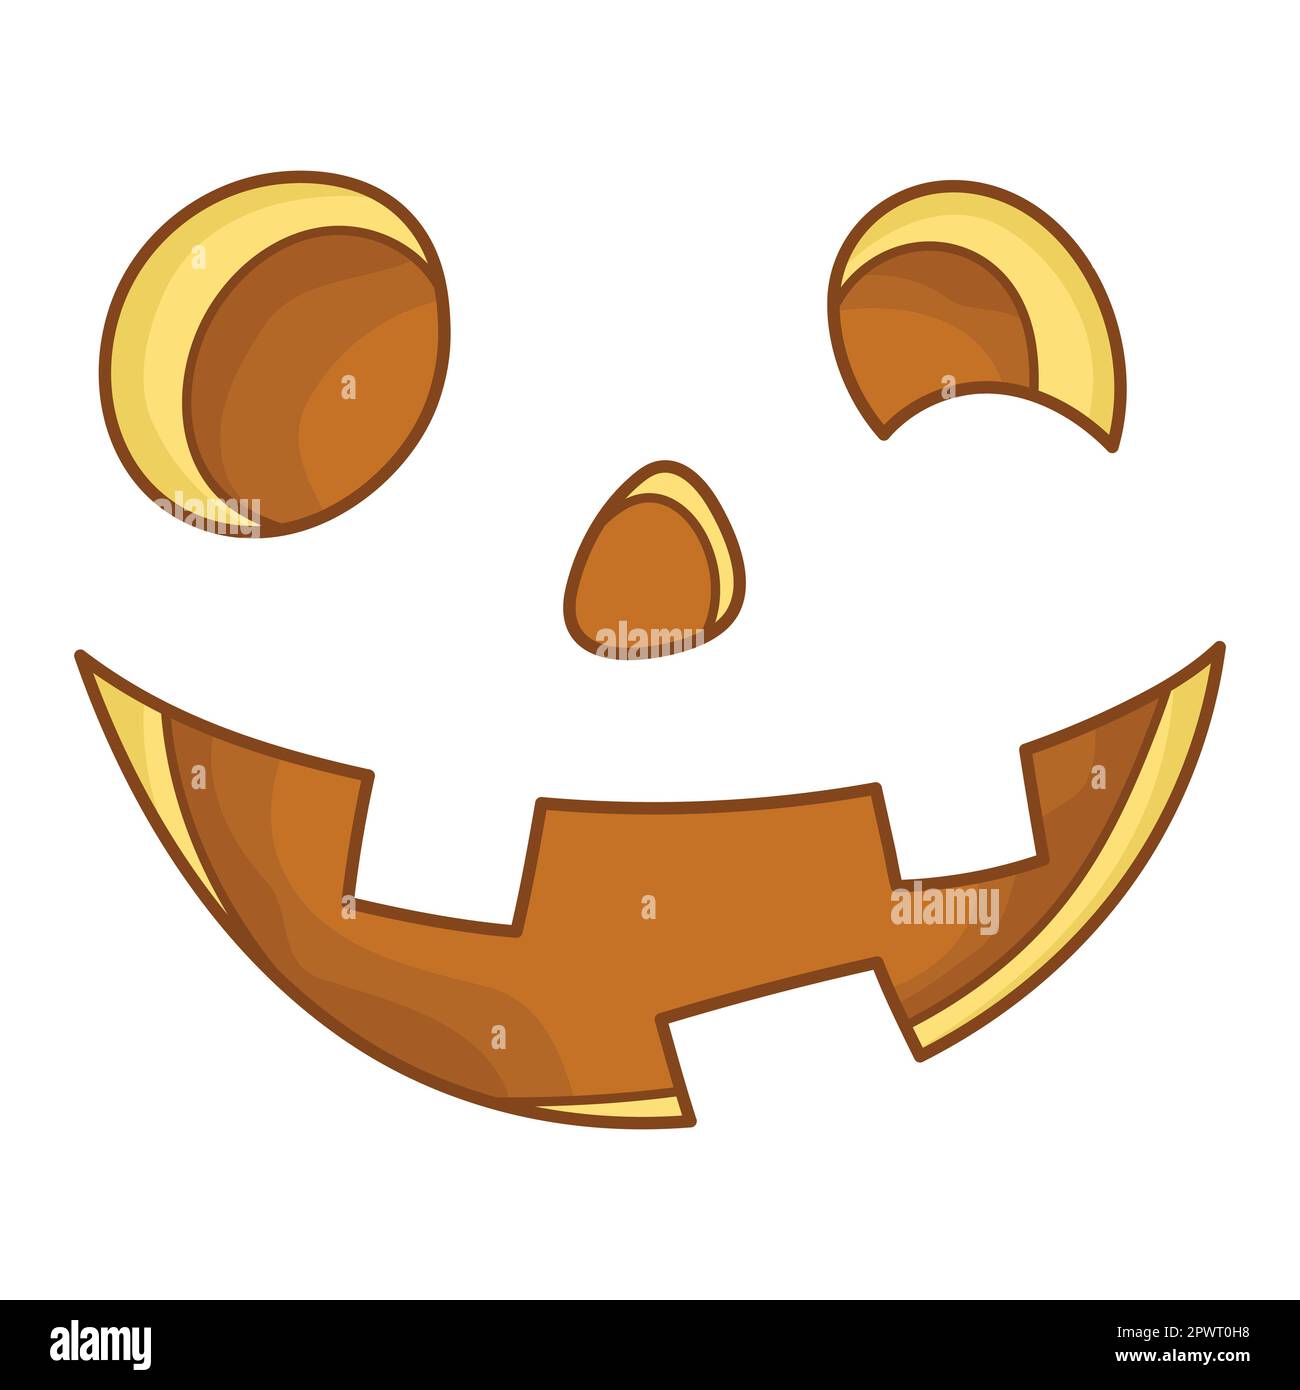 Fröhliches Lächeln für Jack-Laterne. Komischer Gesichtsausdruck. Eine fiktive Halloween-Cartoon-Figur. Einfaches, flaches Element für das Weihnachtsdesign. Isoliert Stock Vektor